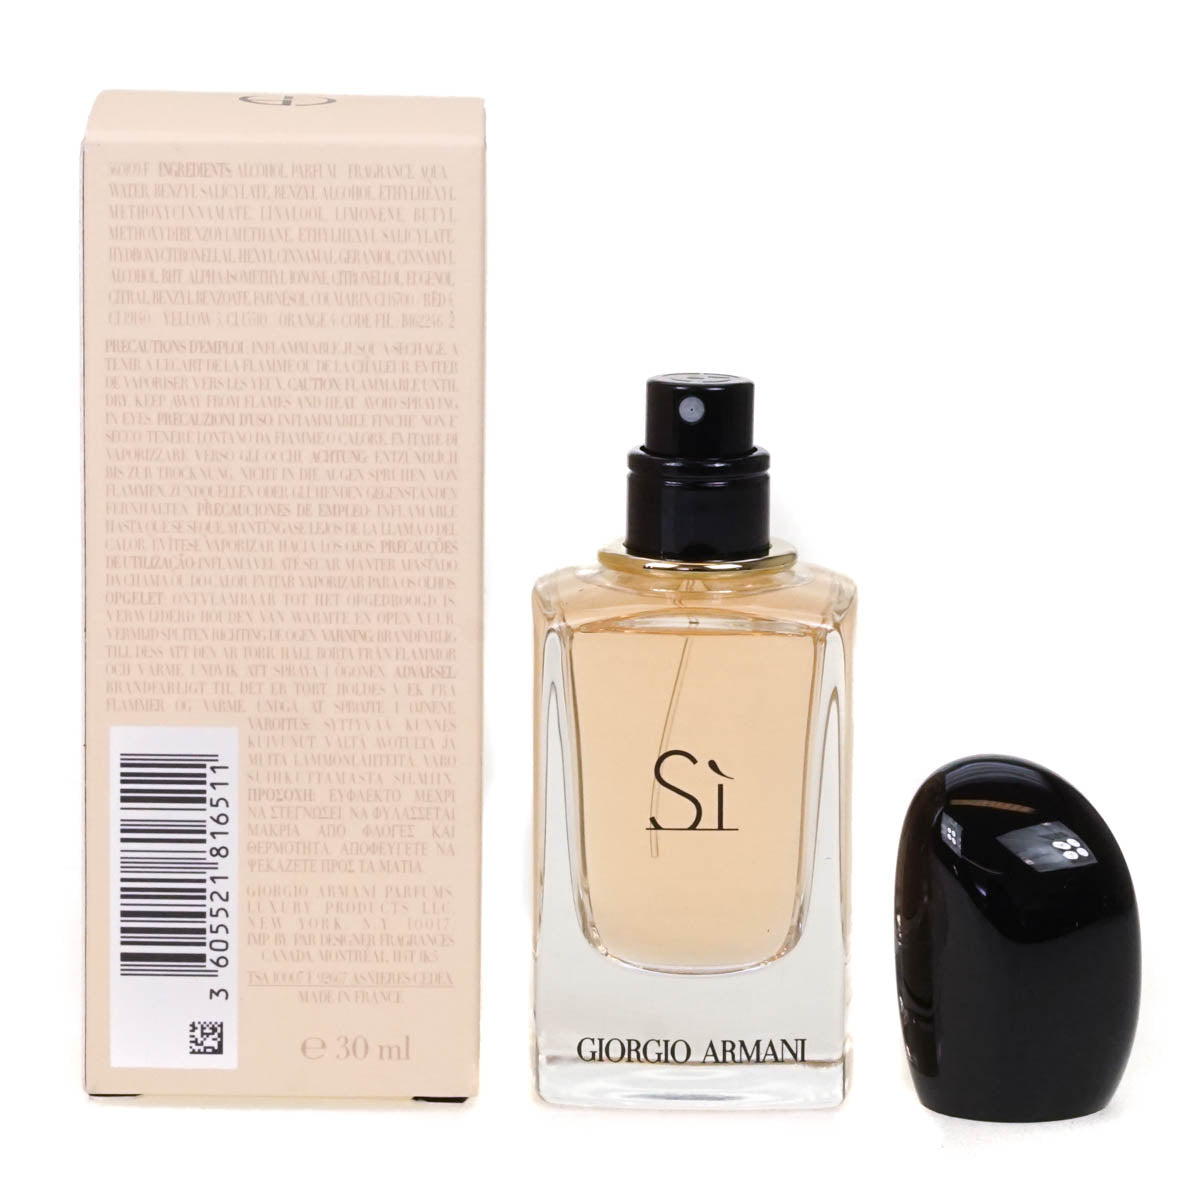 Giorgio Armani Si 30ml Eau De Parfum (Blemished Box)